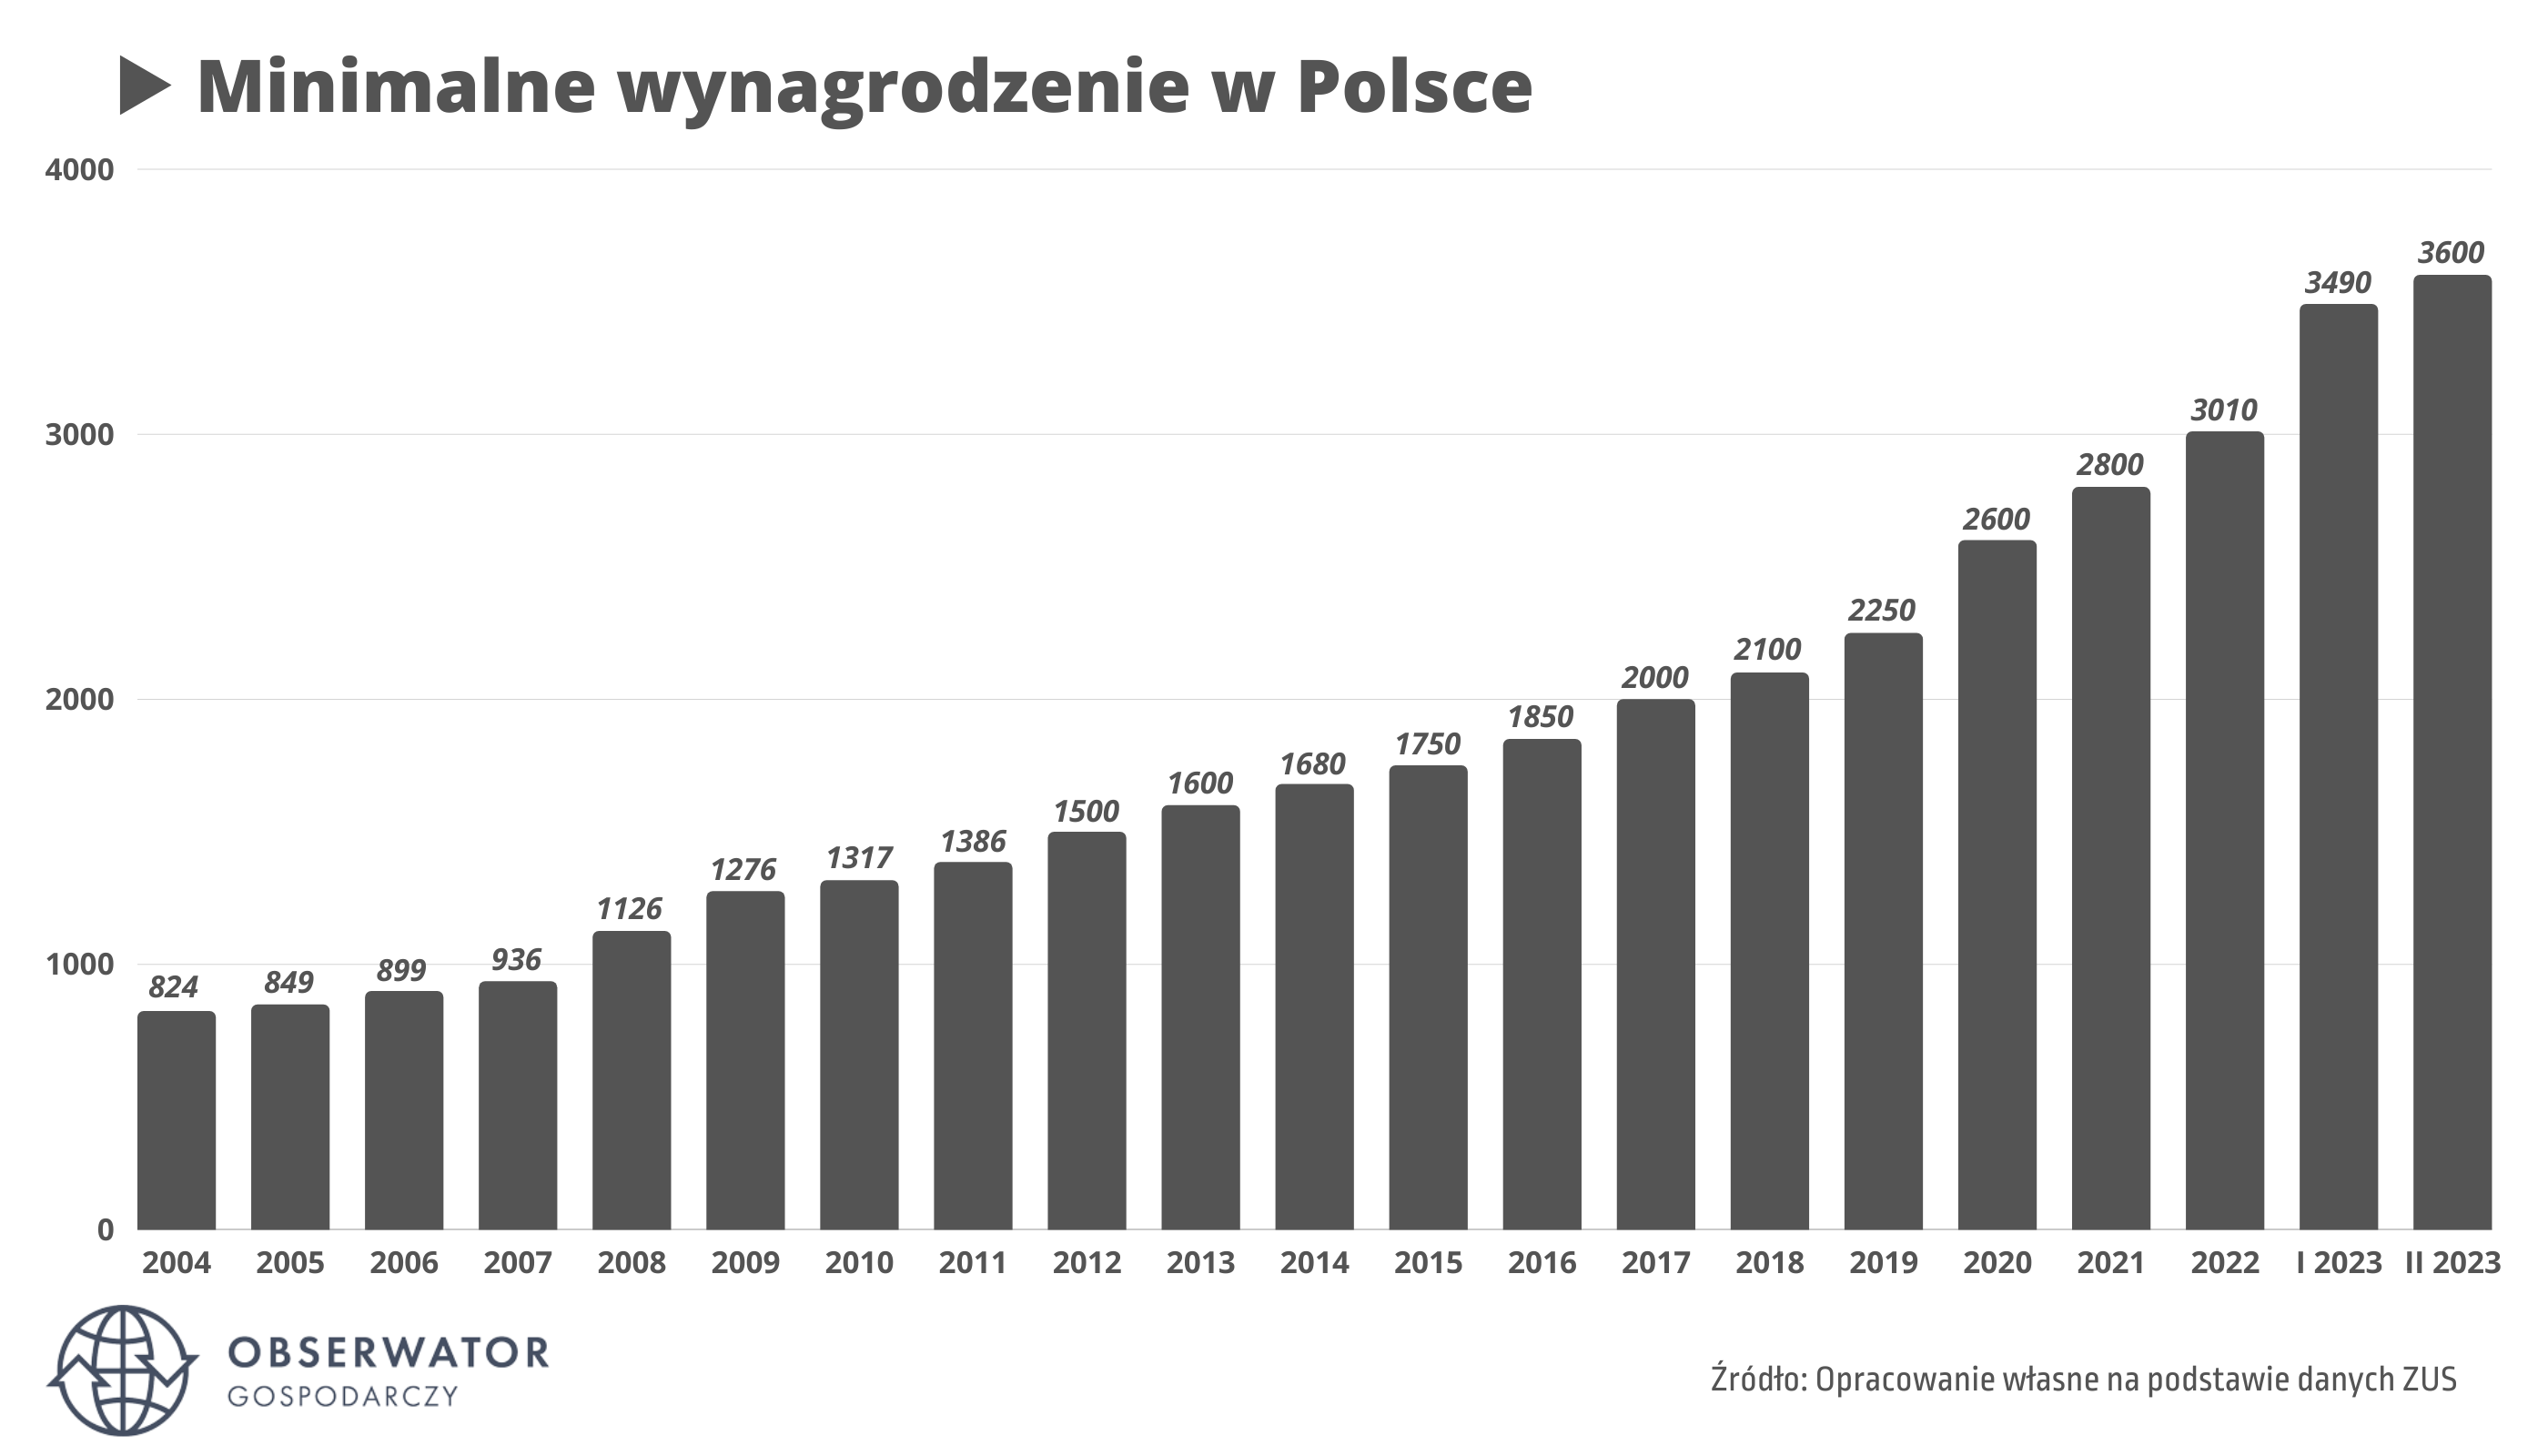 Minimalne wynagrodzenie w Polsce